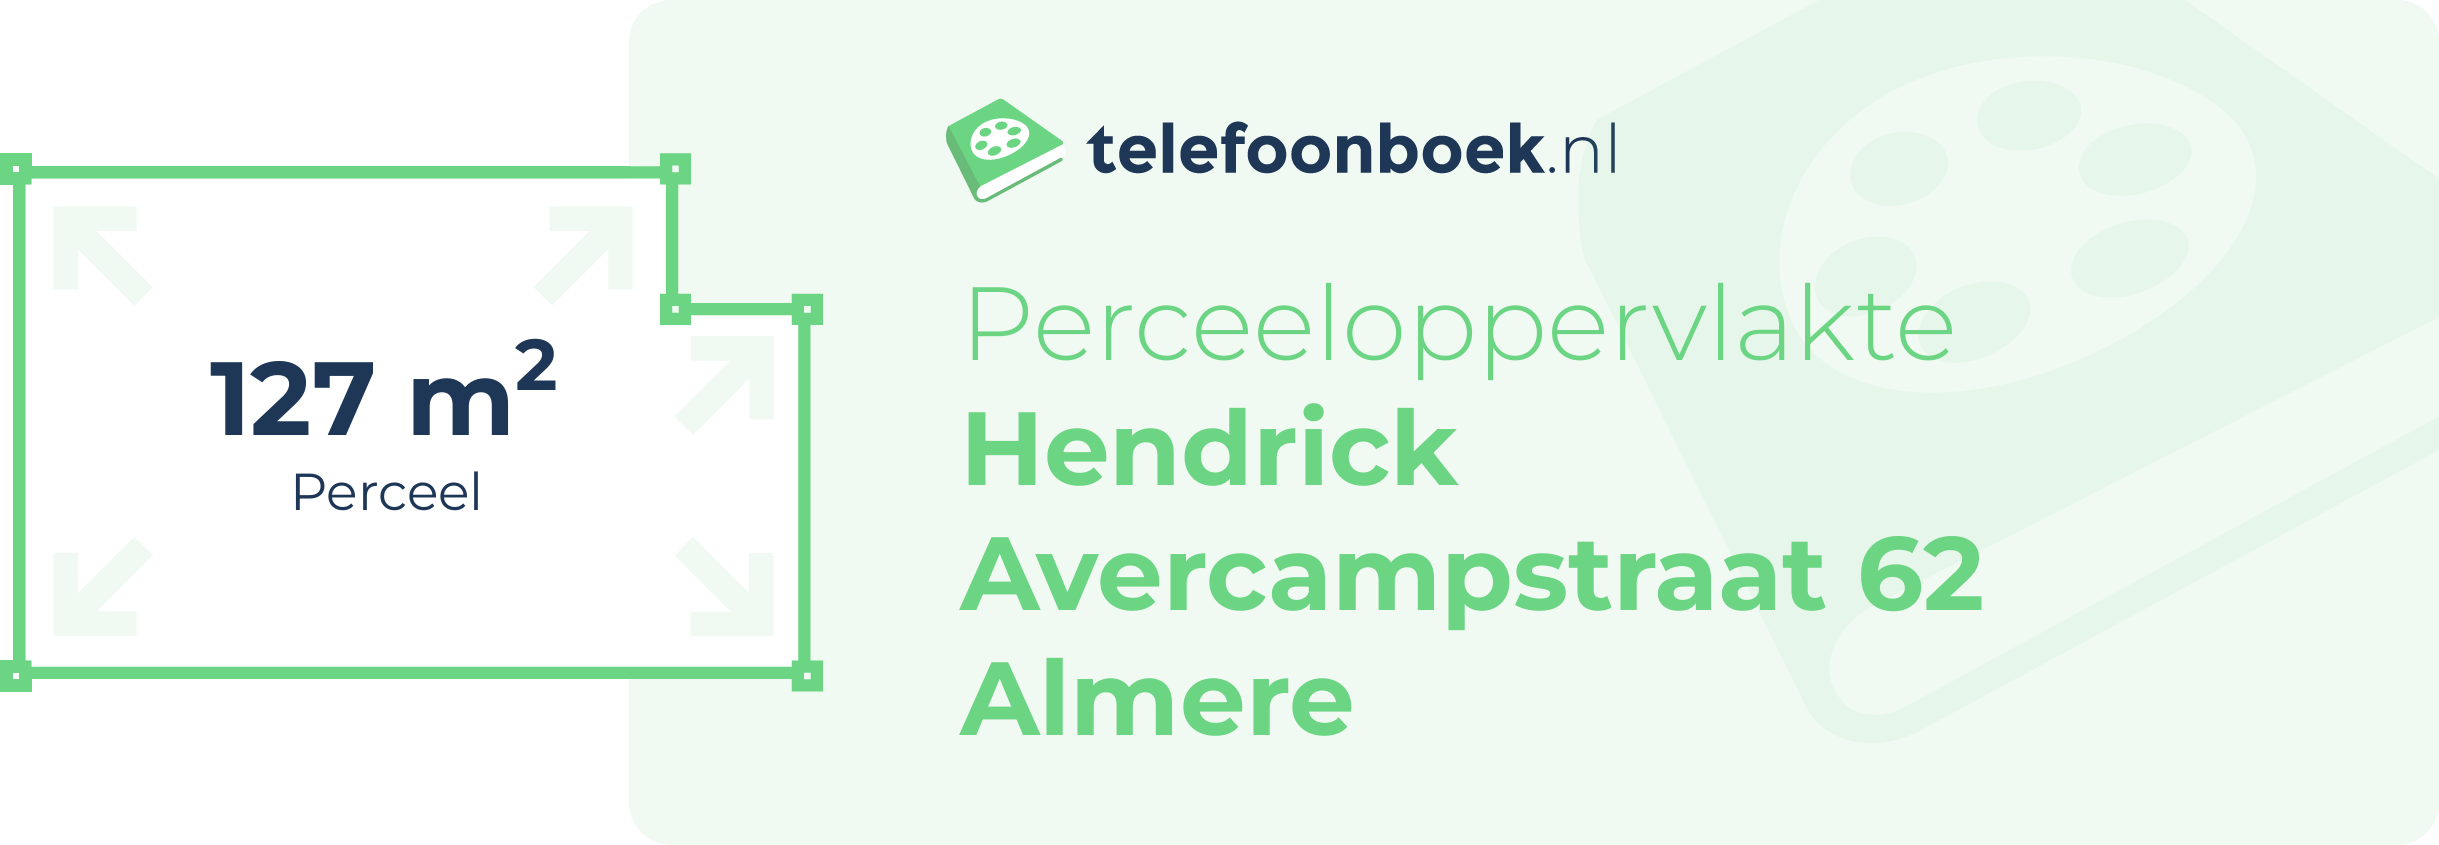 Perceeloppervlakte Hendrick Avercampstraat 62 Almere